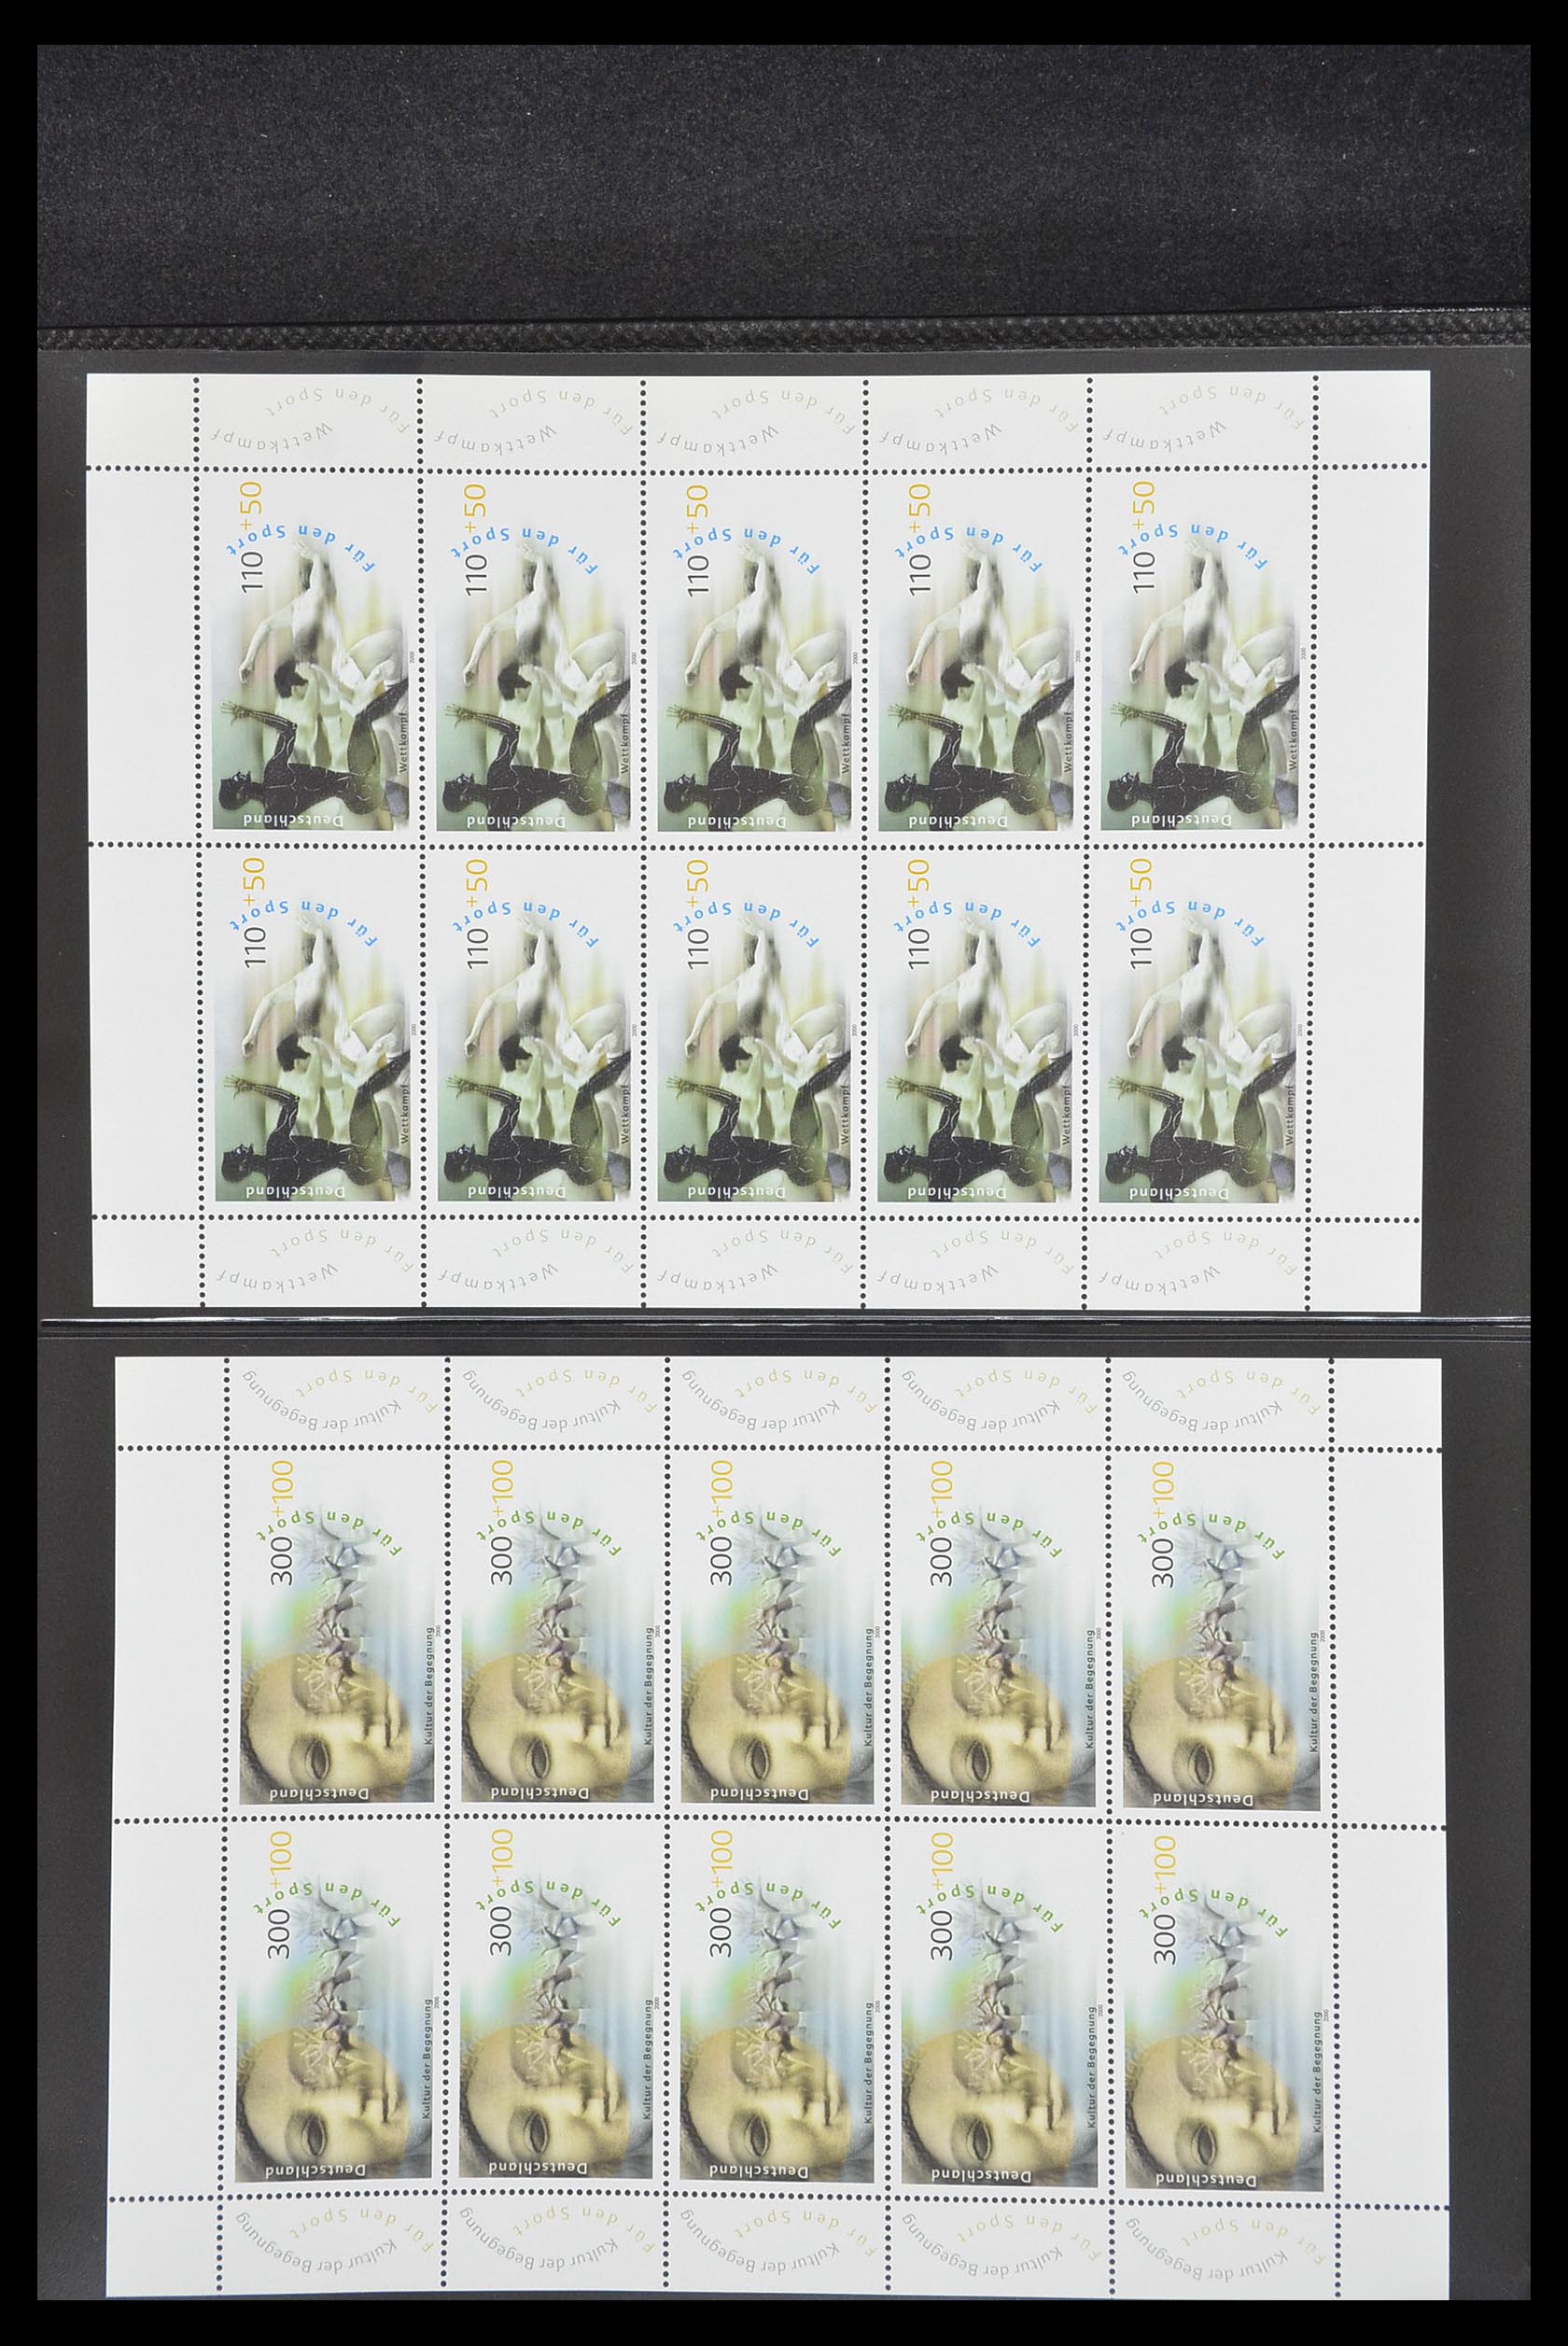 33936 150 - Stamp collection 33936 Bundespost kleinbogen 1994-2000.